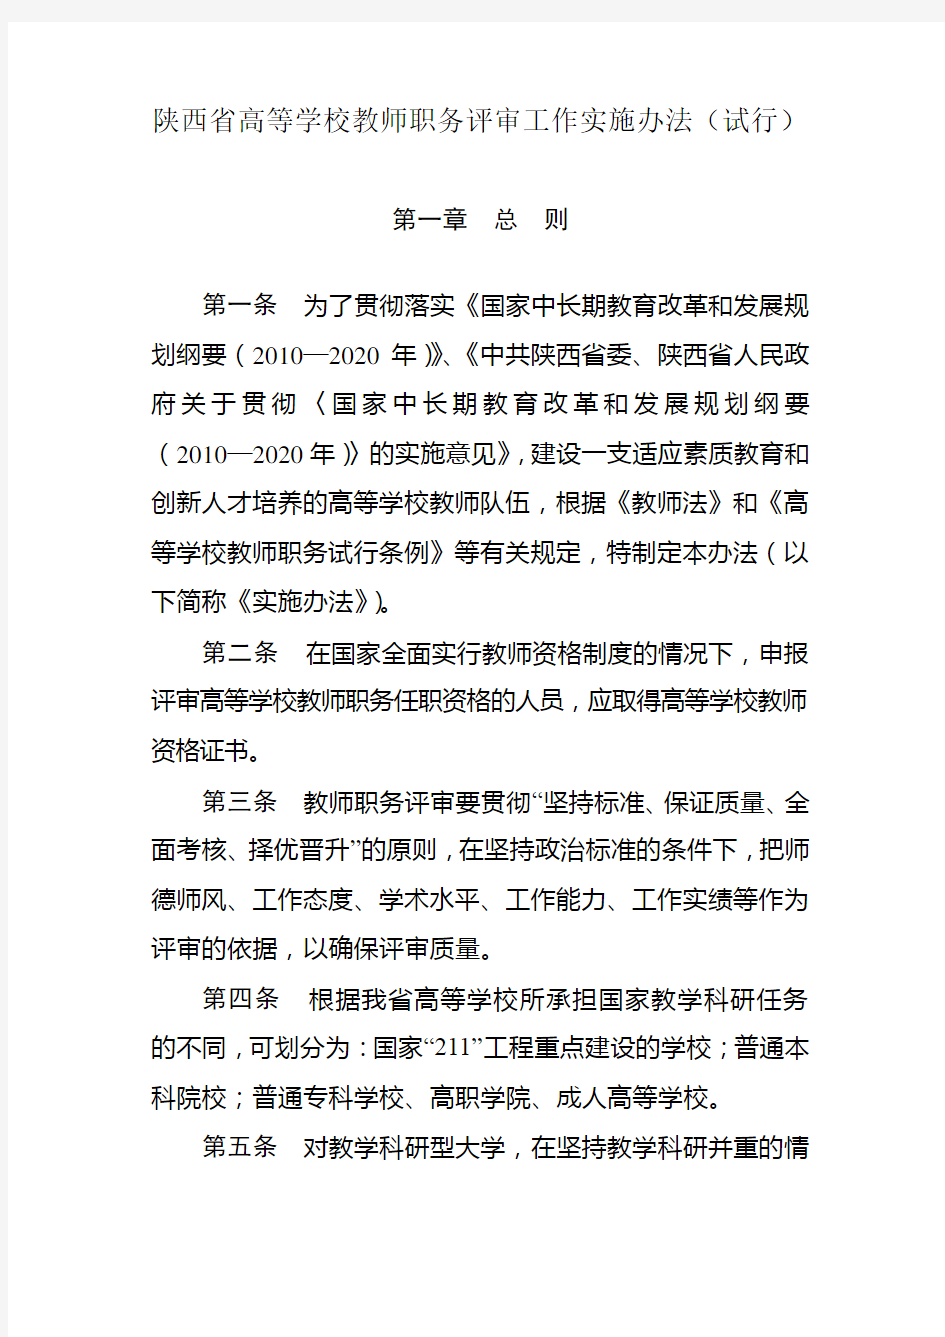 2020年(岗位职责)陕西省高等学校教师职务评审工作实施办法